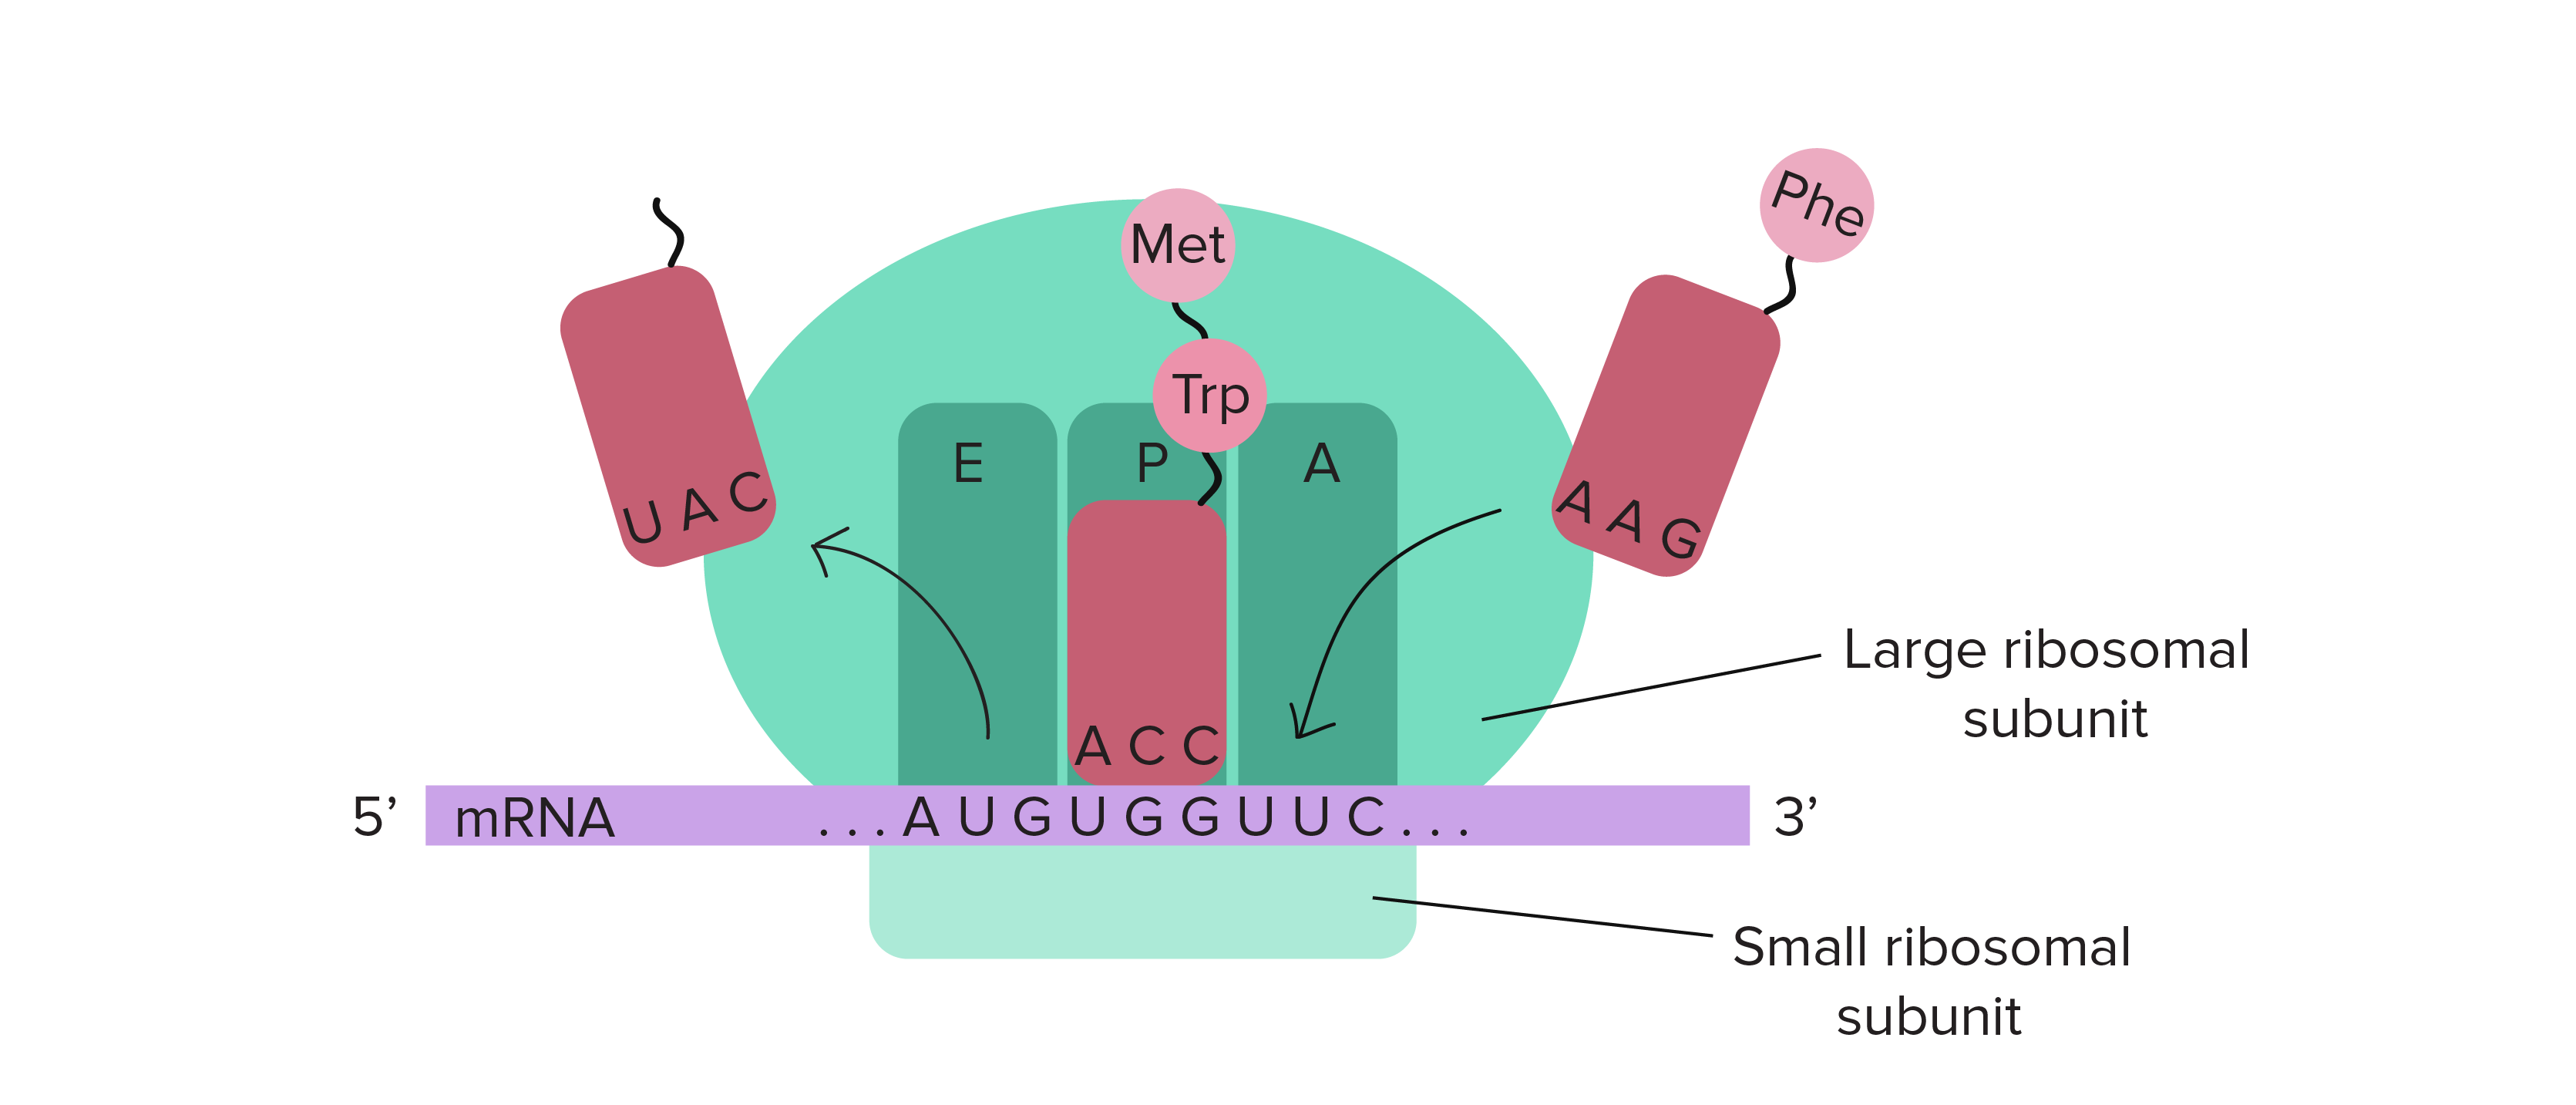 O ribossomo é constituído de uma subunidade grande e outra pequena. A subunidade pequena se liga a um transcrito de RNAm e ambas as subunidades se reúnem para fornecer três sítios para RNAts (sítio A, sítio P e sítio E). No diagrama, os sítios A, P e E aparecem na ordem A-P-E da direita para a esquerda.

Após a ligação inicial do primeiro RNAt no sítio P, um RNAt carregado, de chegada, vai se ligar ao sítio A. A formação de uma ligação peptídica vai transferir o aminoácido do primeiro RNAt (Met) para o aminoácido do segundo RNAt (nesse caso, Trp). Essa cadeia de dois aminoácidos será ligada ao RNAt no sítio A. O ribossomo vai avançar um códon no molde de RNAm. O RNAt no sítio A (com a cadeia polipeptídica) vai se deslocar para o sítio P, e o RNAt vazio, anteriormente no sítio P, vai se deslocar para o sítio E (por onde vai sair do ribossomo). Um novo RNAt (nesse caso, um carregando Phe) vai se ligar ao códon recém exposto no sítio A, e assim o processo pode se repetir.